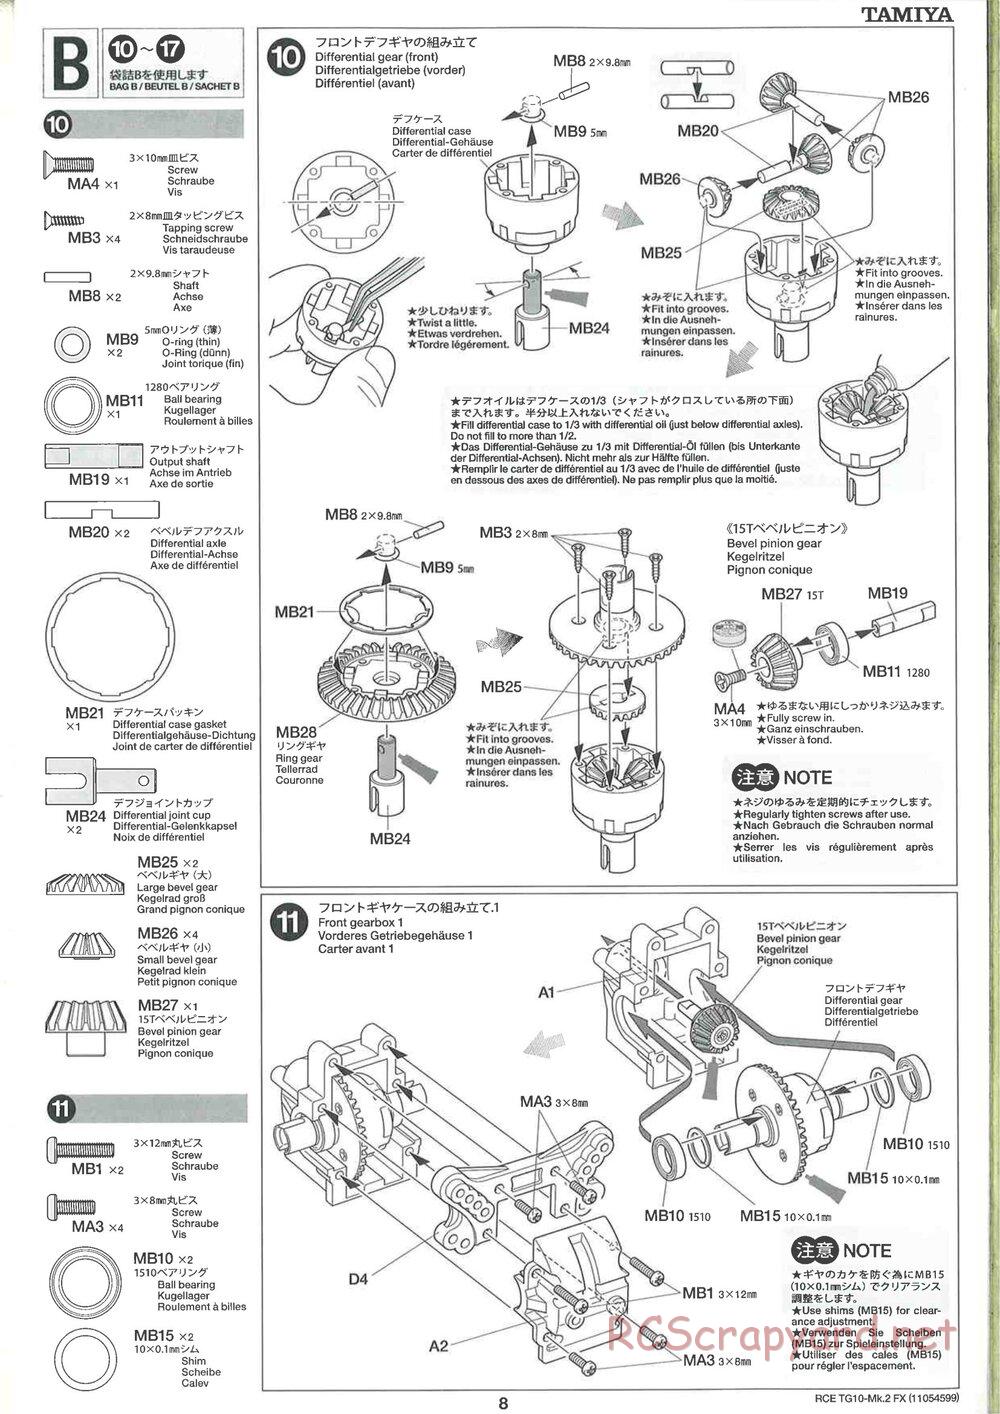 Tamiya - TG10 Mk.2 FX Chassis - Manual - Page 8